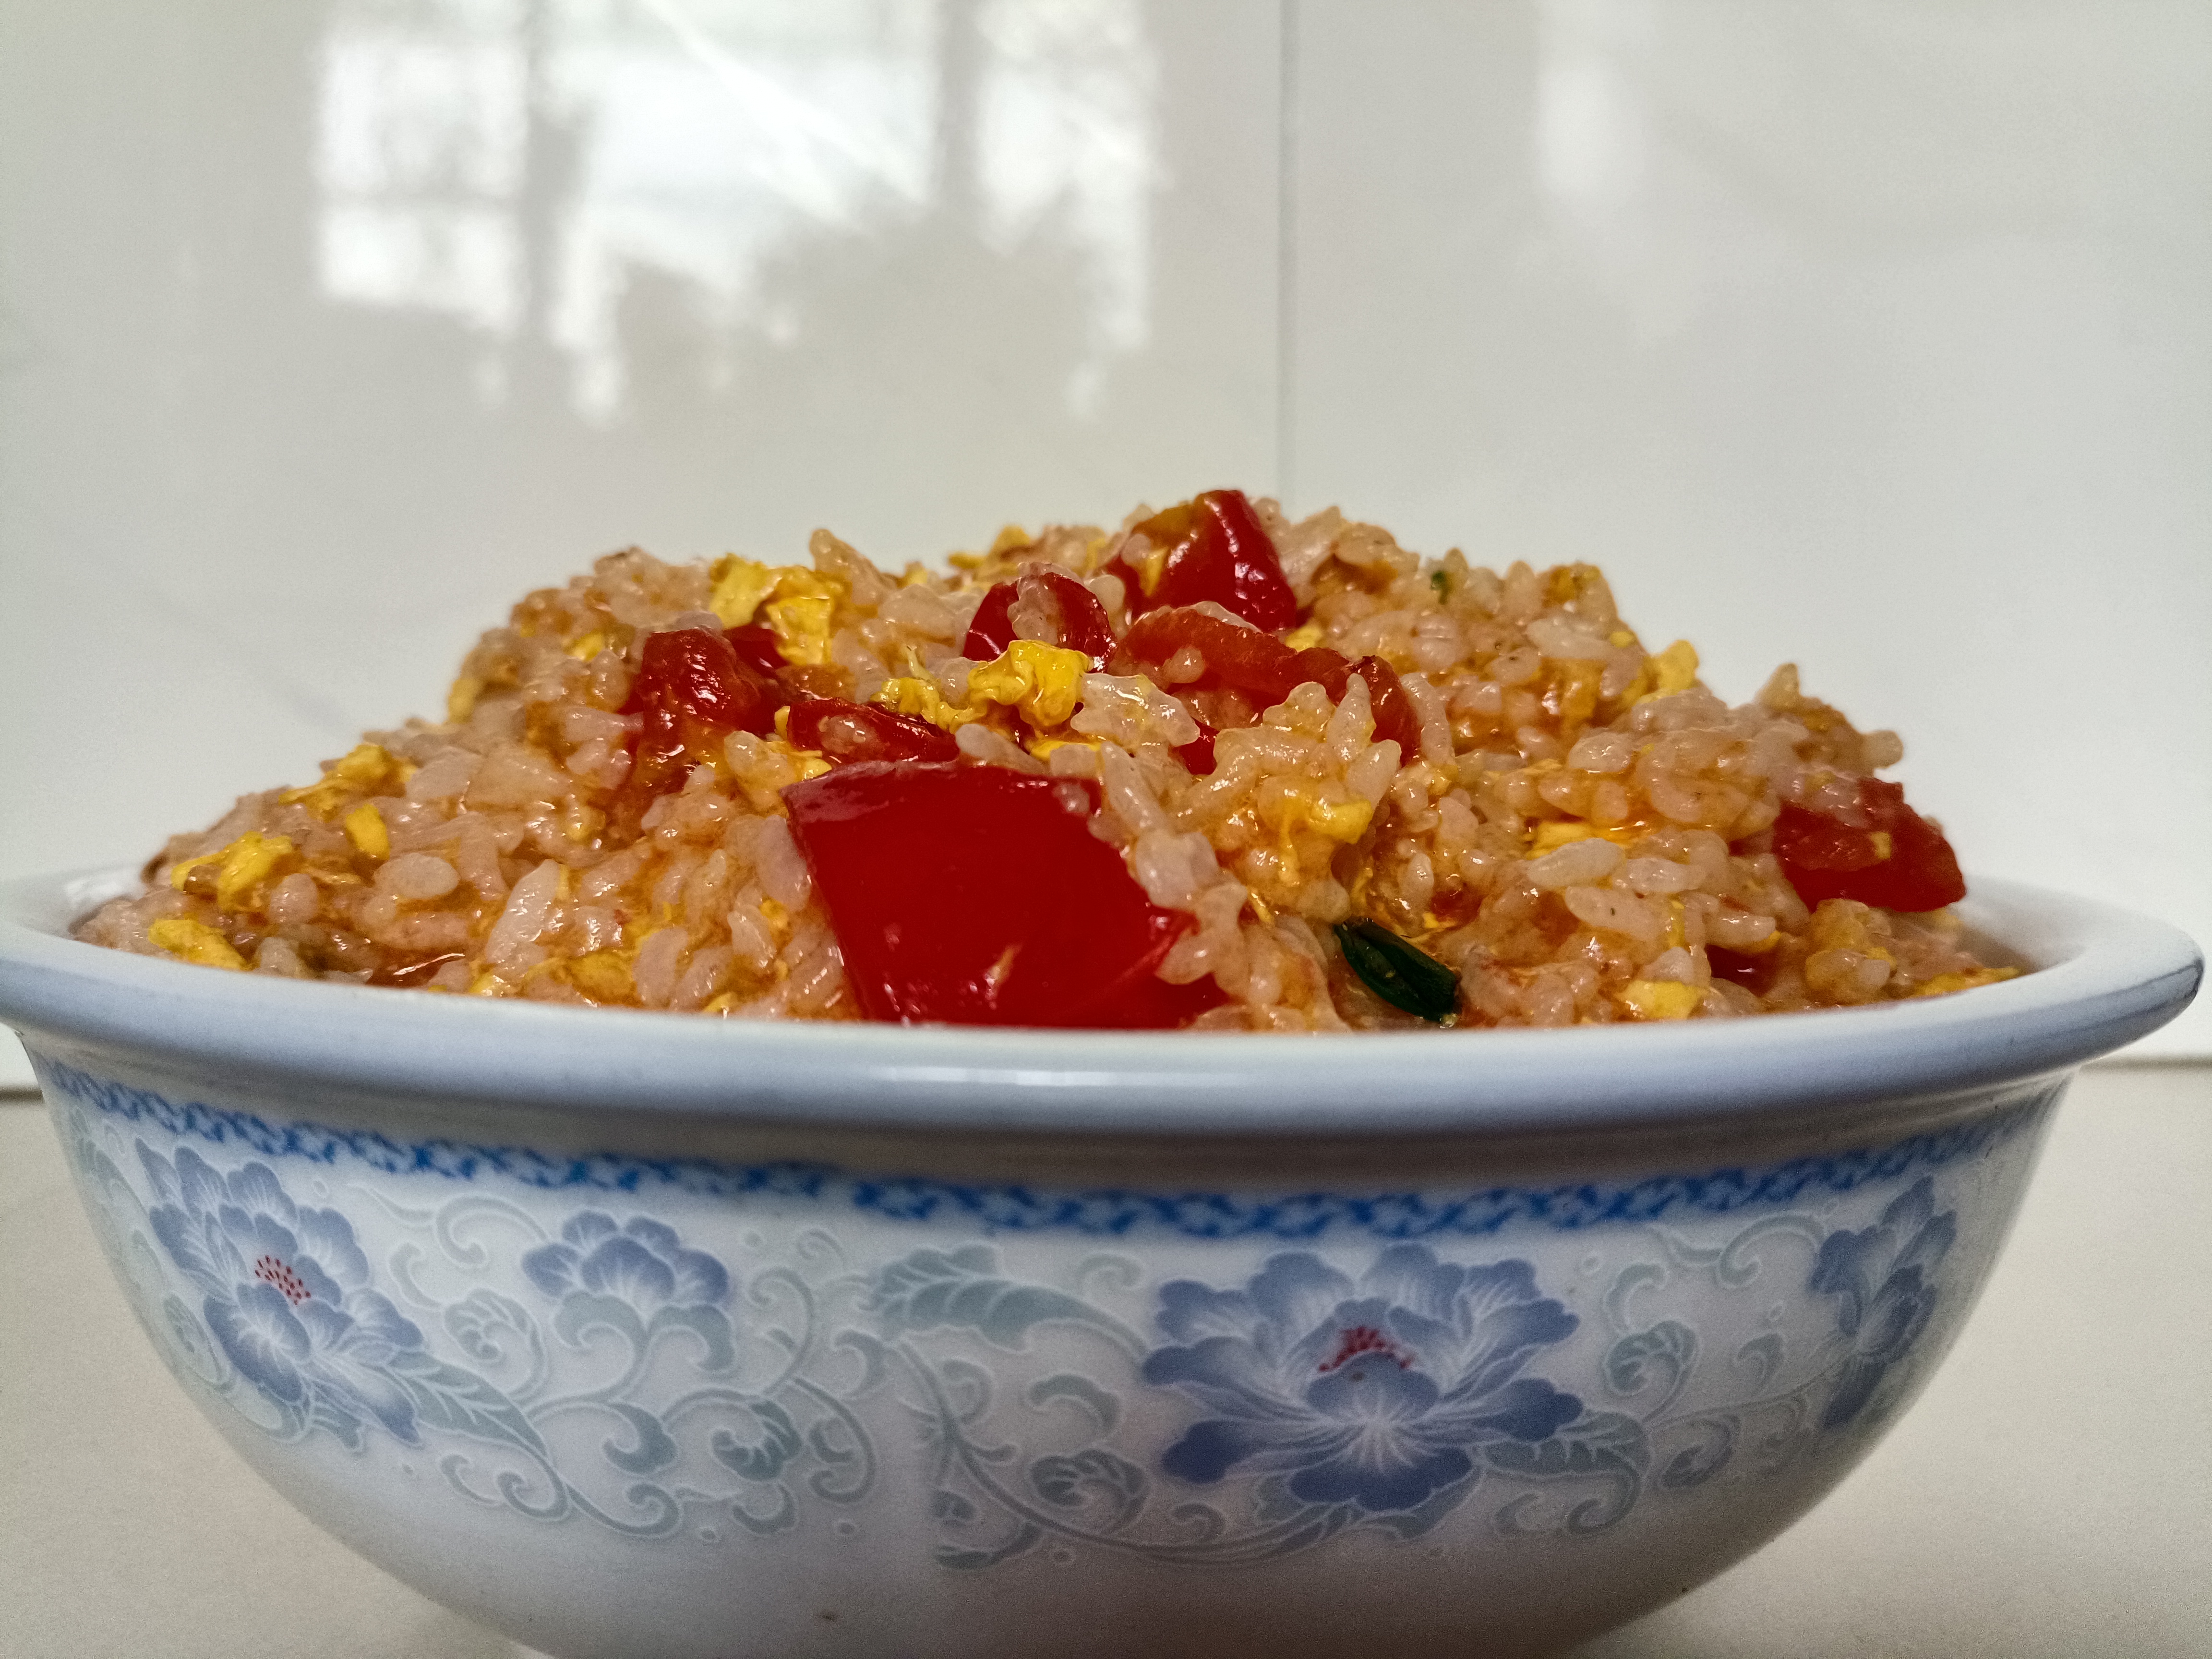 剩米饭这样做❗️番茄鸡蛋浓汤烩饭❗️连吃三碗都不够